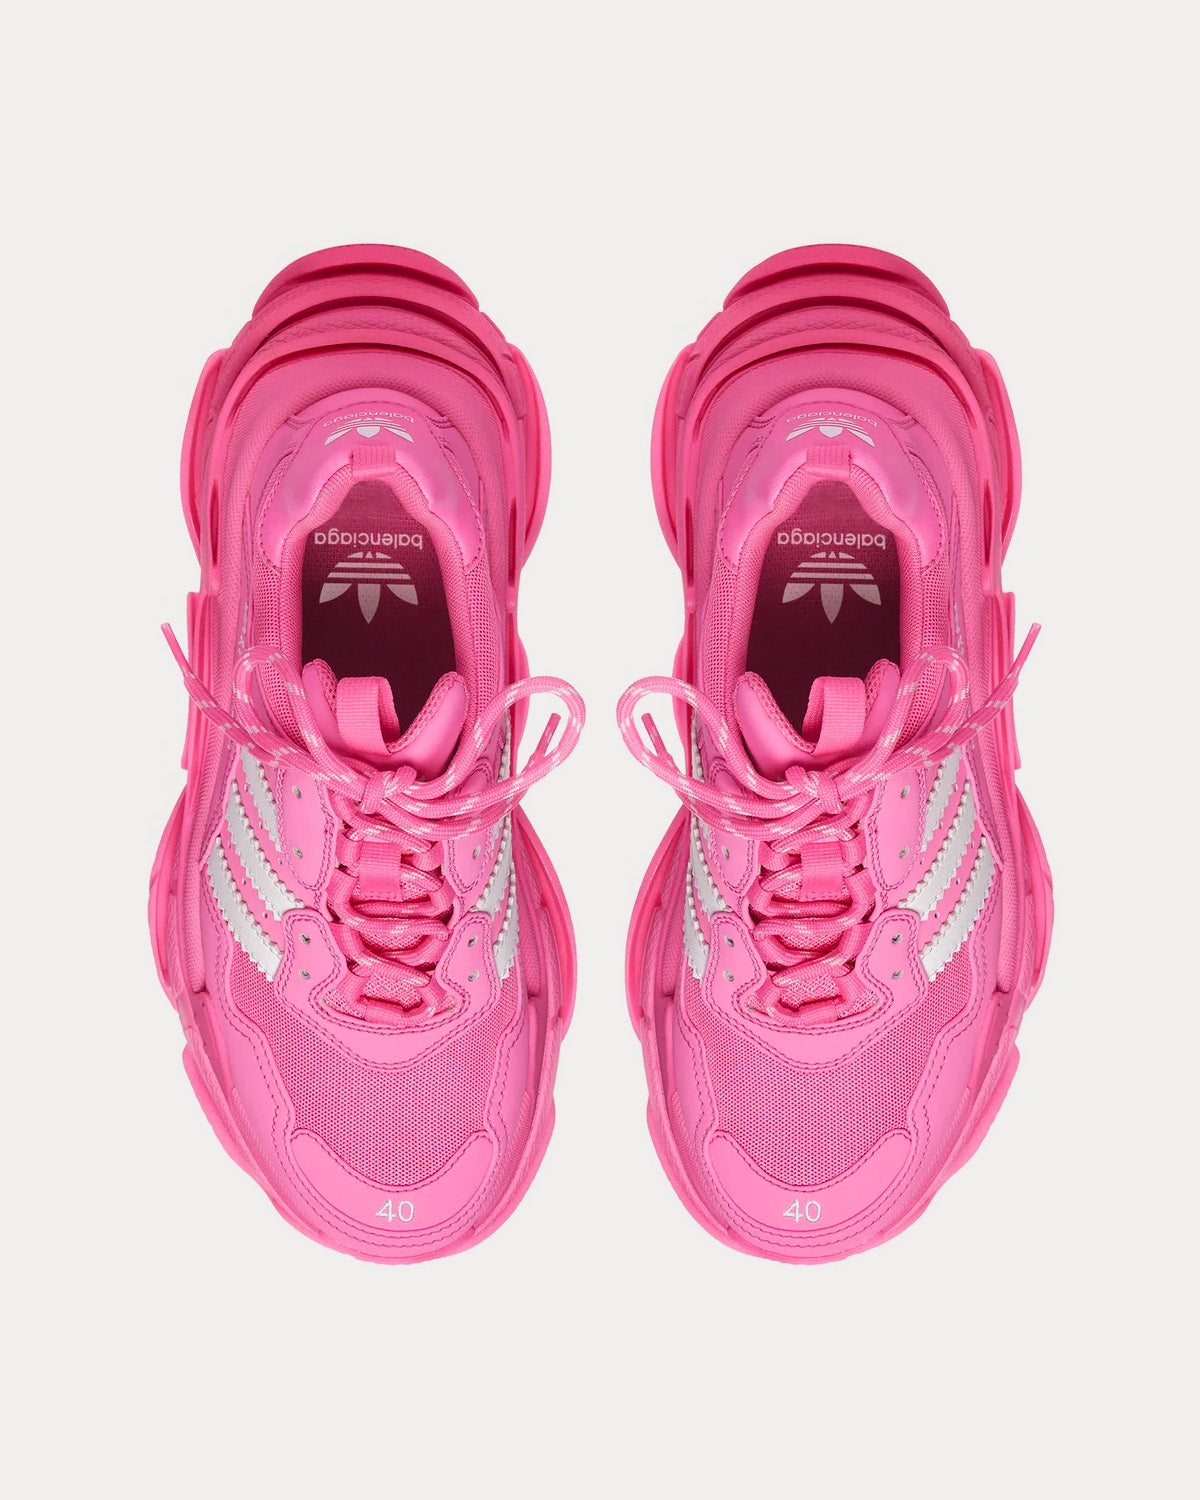 Balenciaga x Adidas Triple S Pink / White Low Top Sneakers - Sneak 